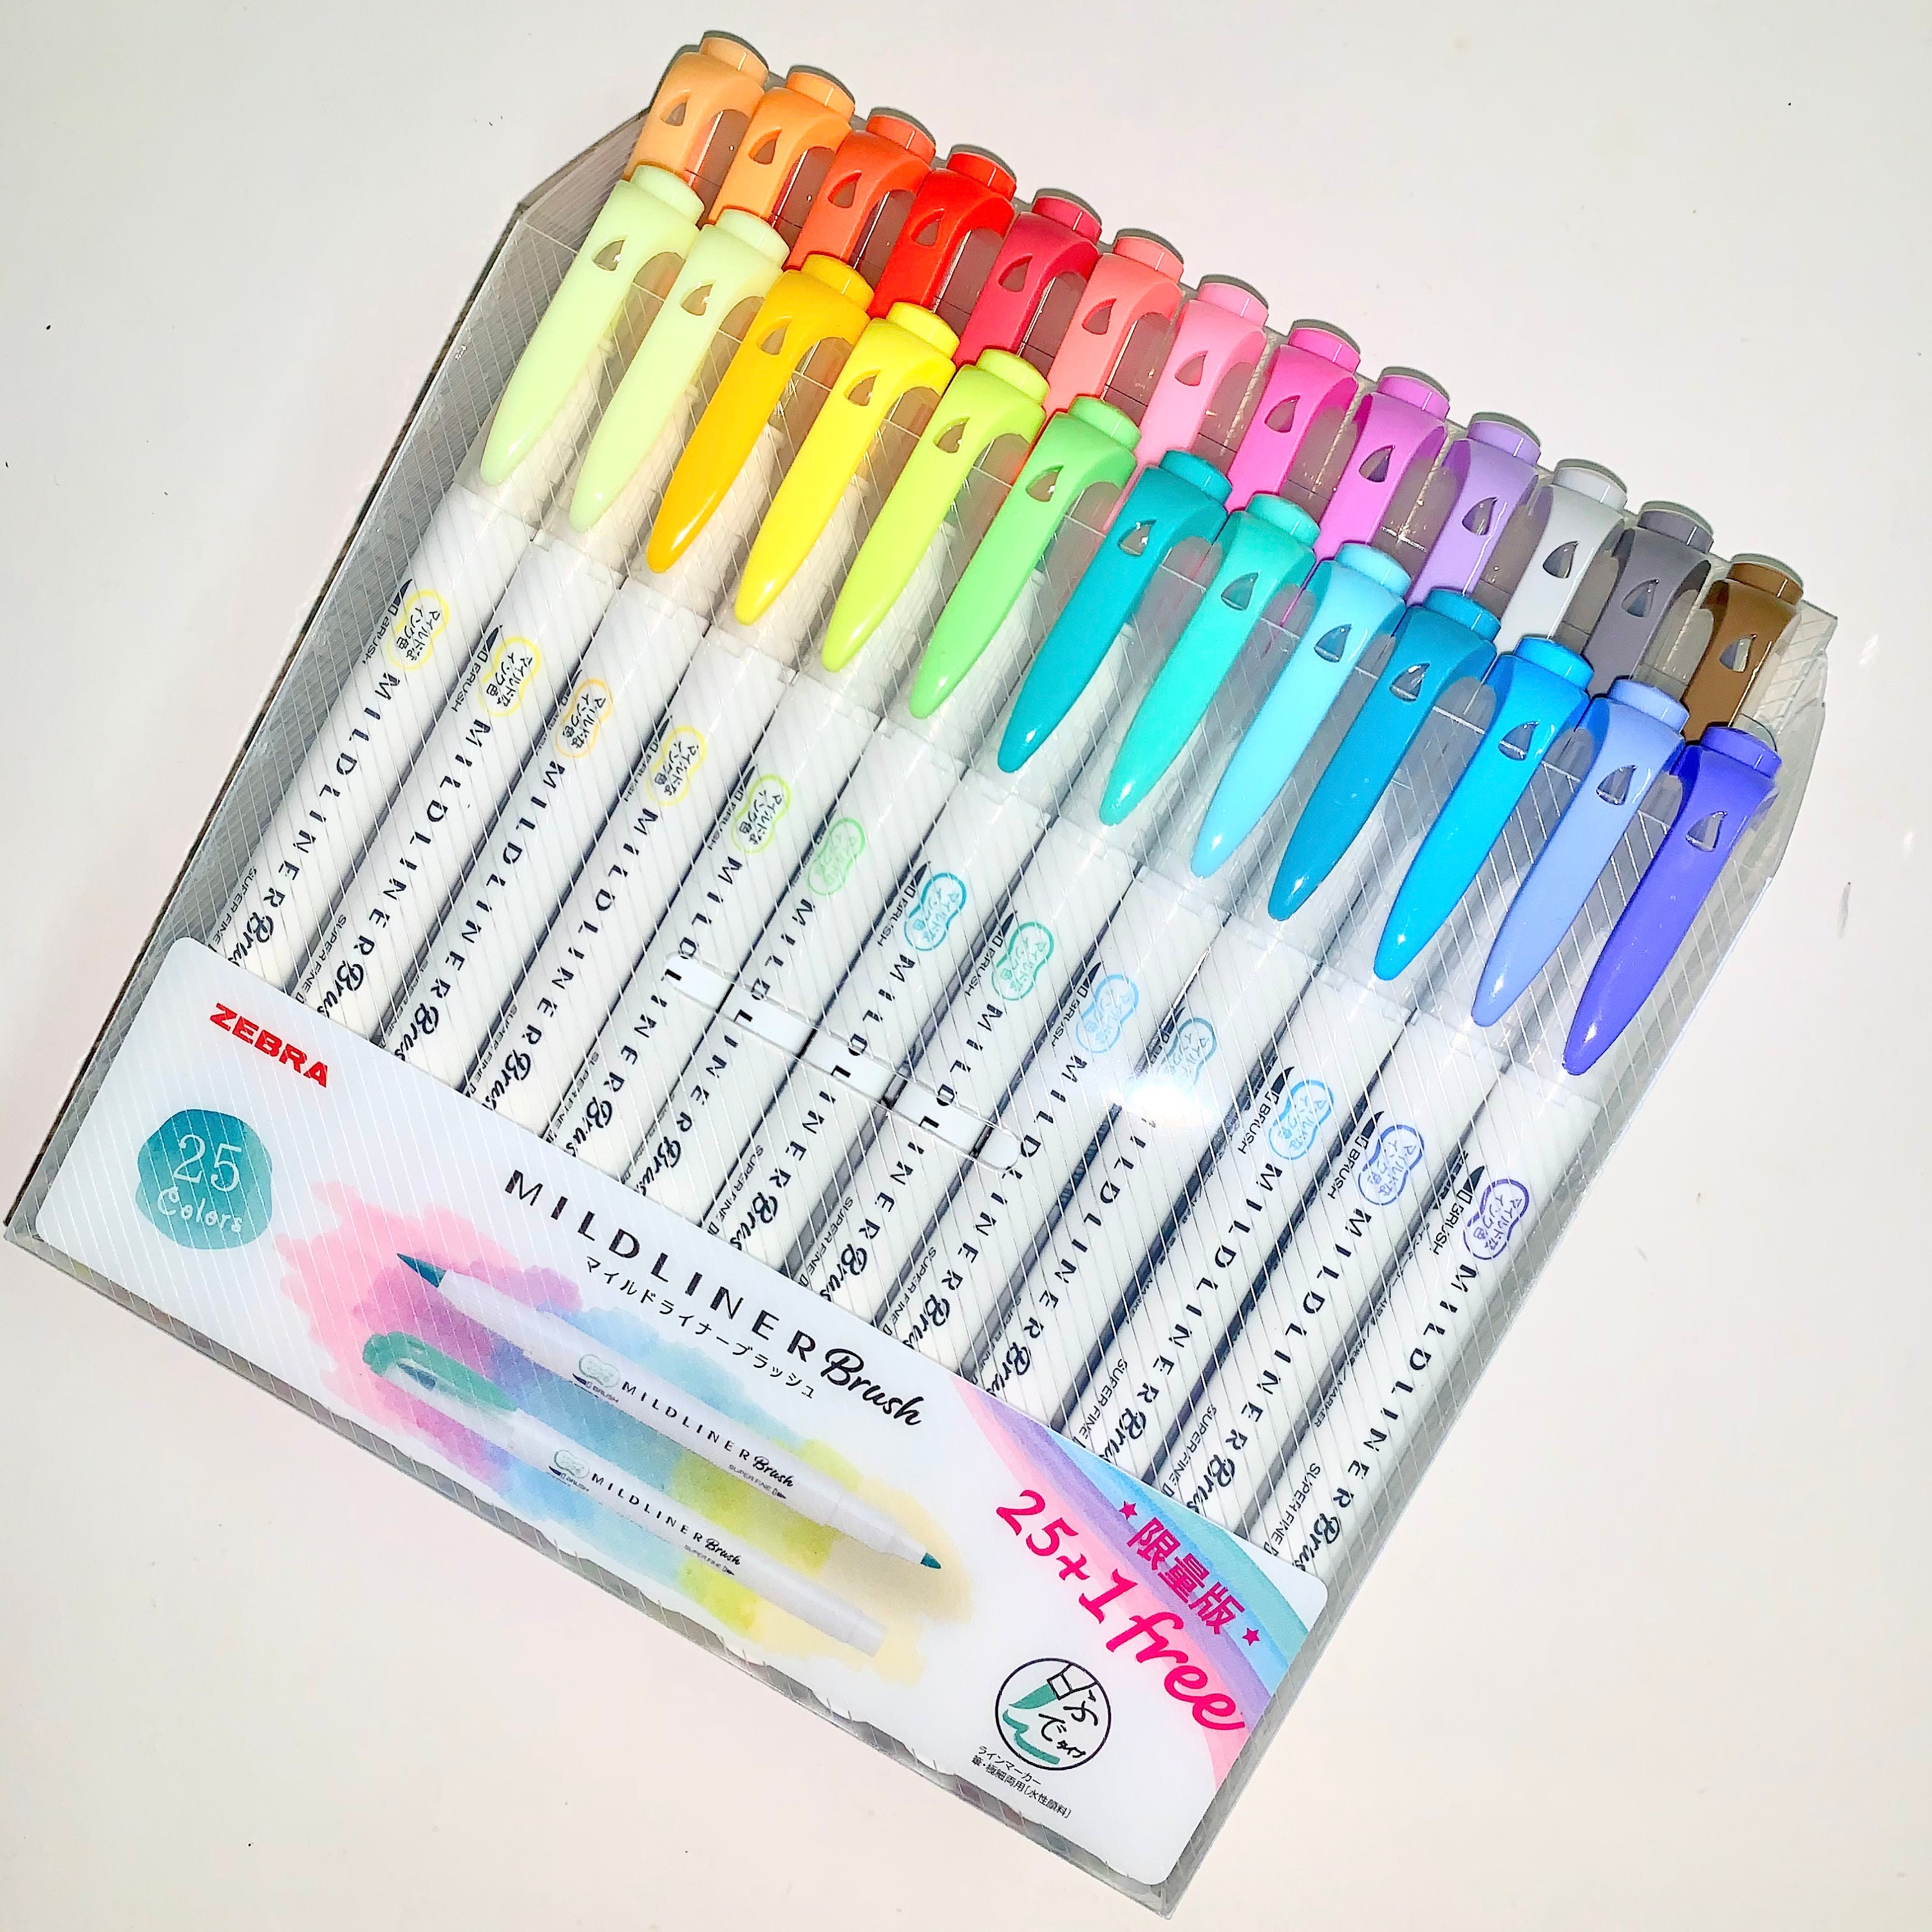 Zebra MildLiner 25 Color Set - Tokyo Pen Shop